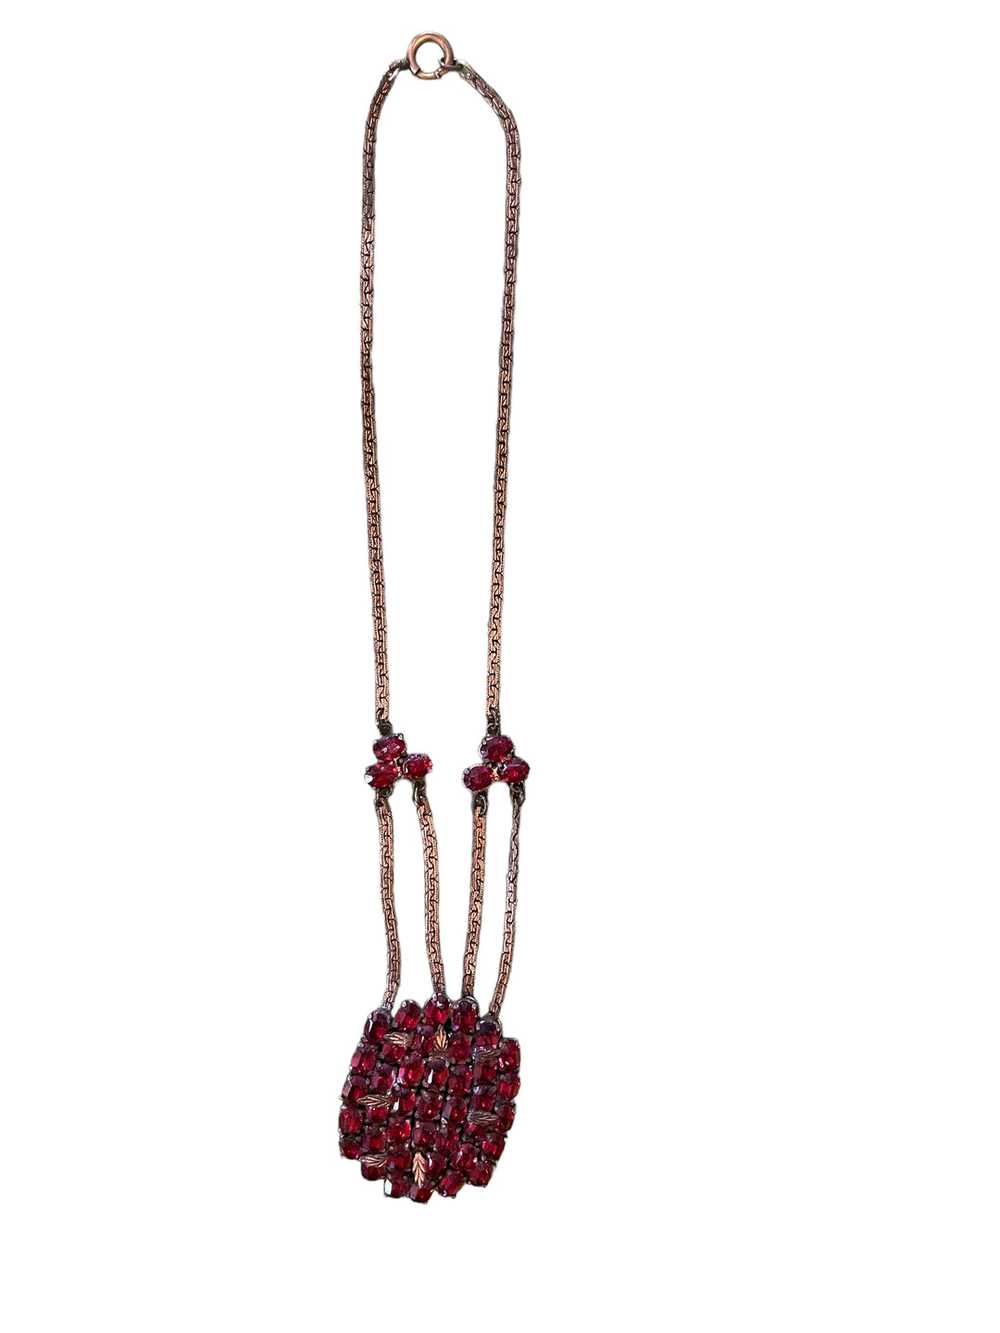 Ruby Rhinestone Necklace - image 1